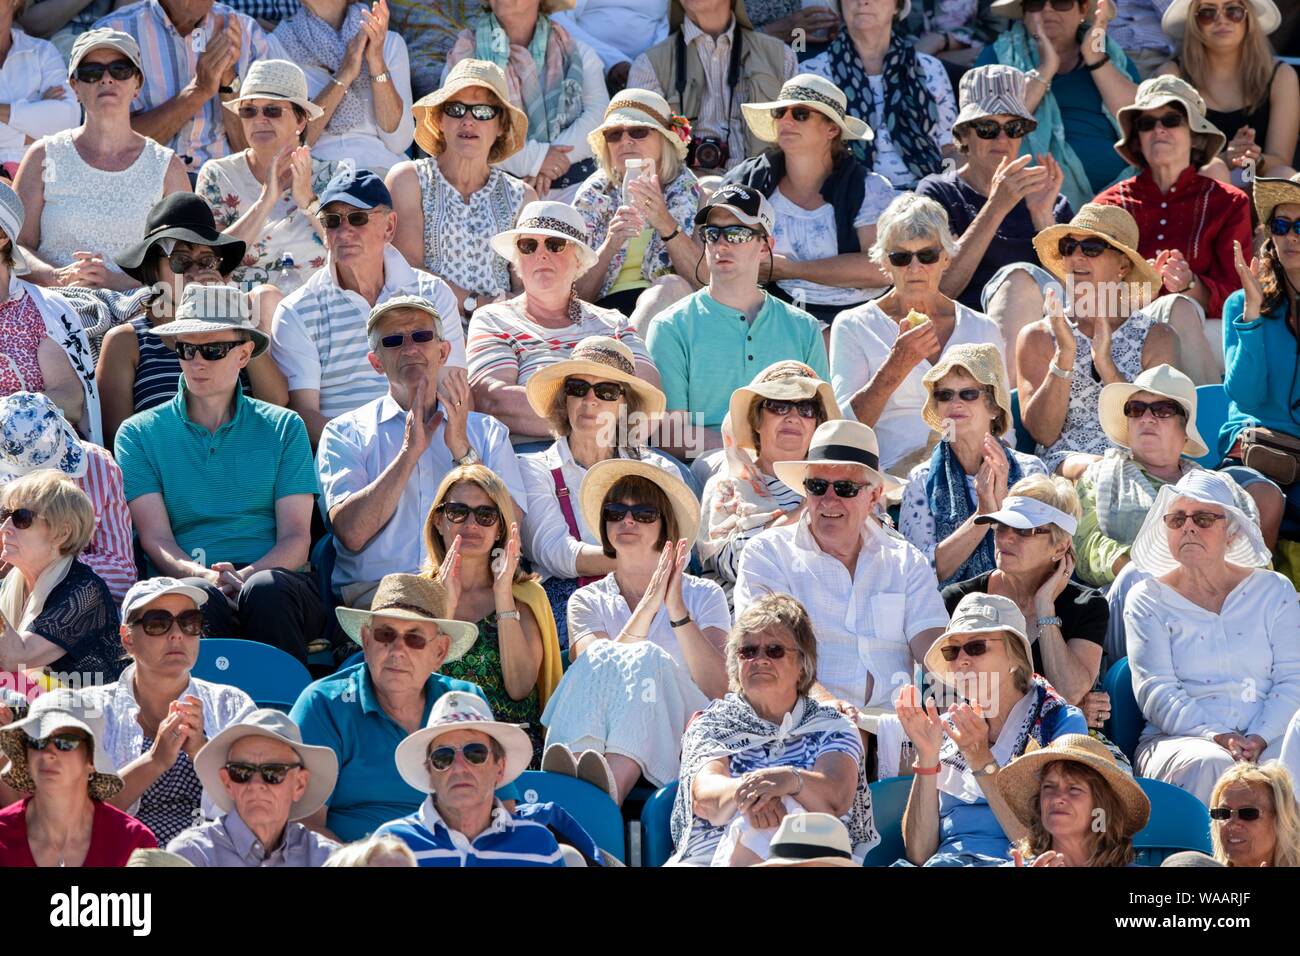 Die Zuschauer applaudieren. Natur Tal International 2018 - Dienstag, 26, Juni, 2018 - Devonshire Park, Eastbourne, England. (Foto: Nick Walker/ Stockfoto